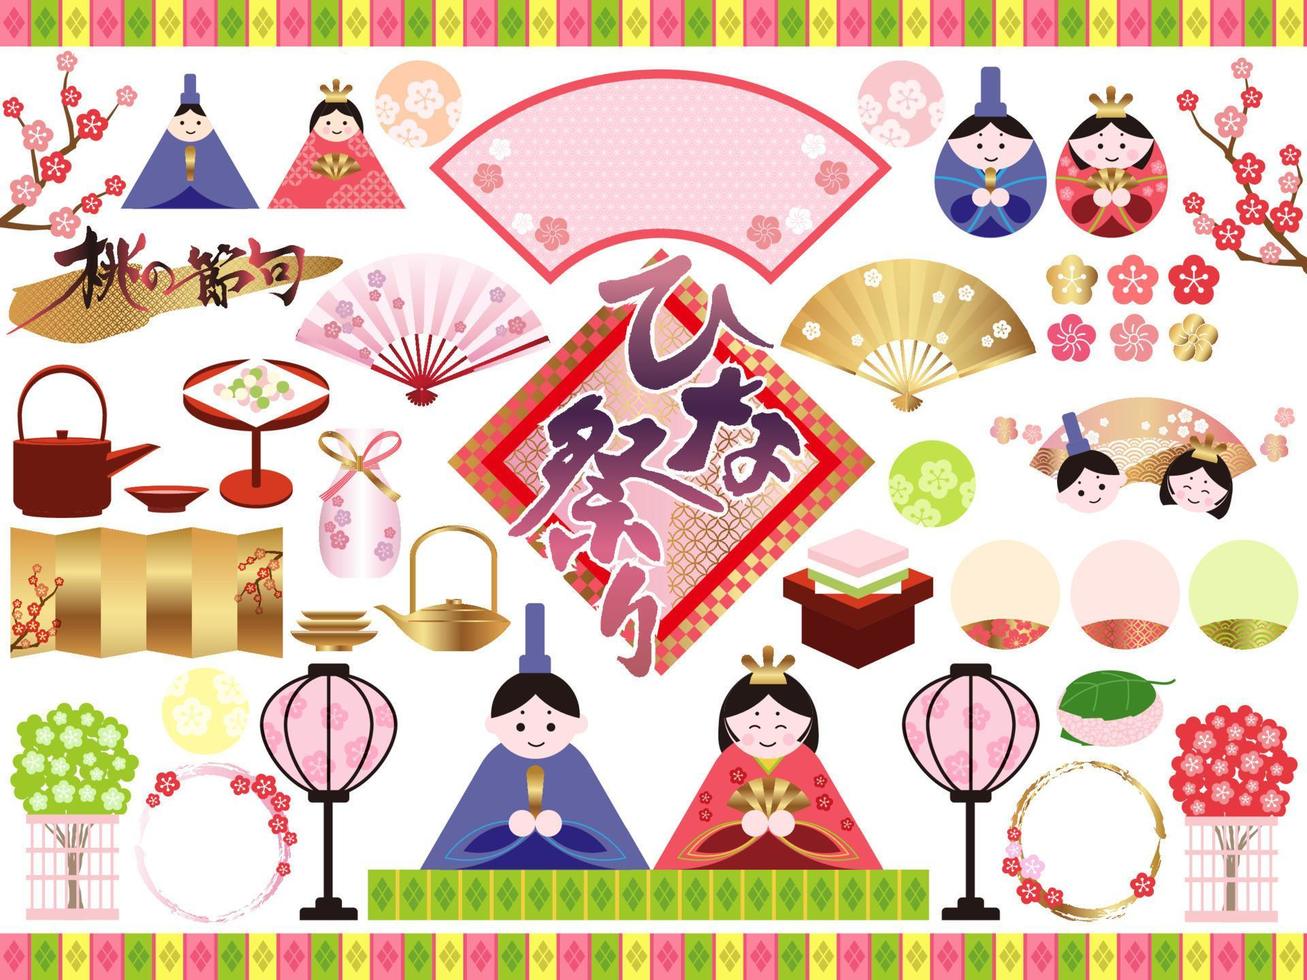 illustrazioni vettoriali per il festival delle bambole giapponesi isolate su sfondo bianco. traduzione del testo - il festival delle bambole. il giorno delle ragazze.